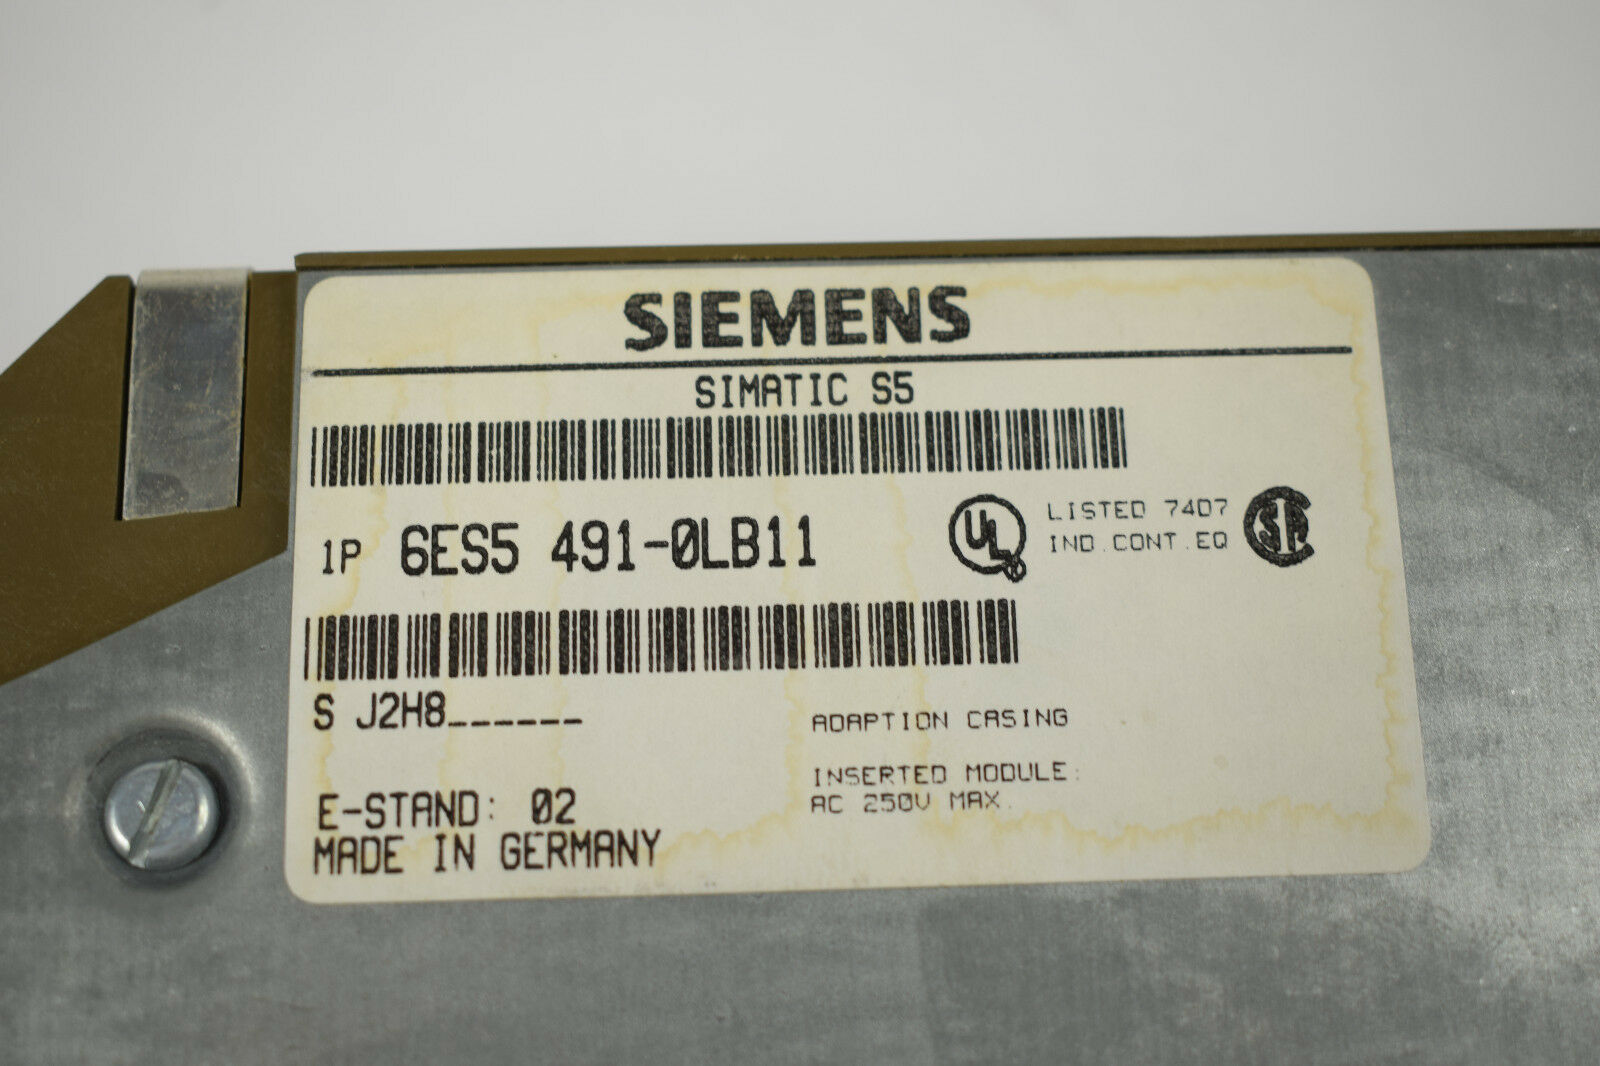 Siemens simatic S5 6ES5 491-0LB11